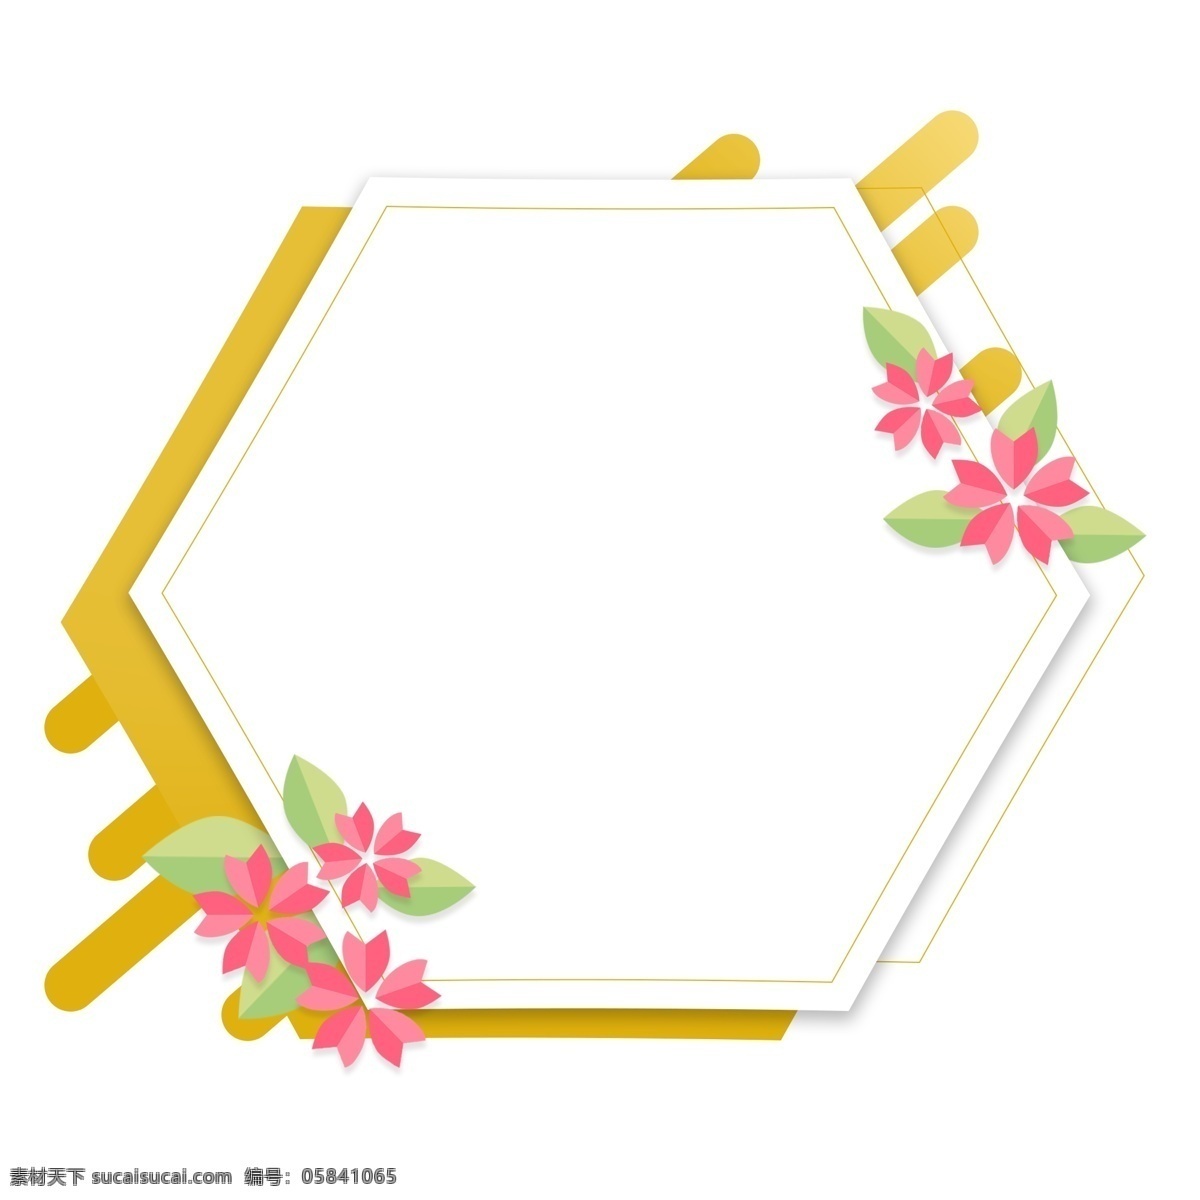 手绘 折纸 花卉 植物 卡通 边框 对话框 清新 黄色